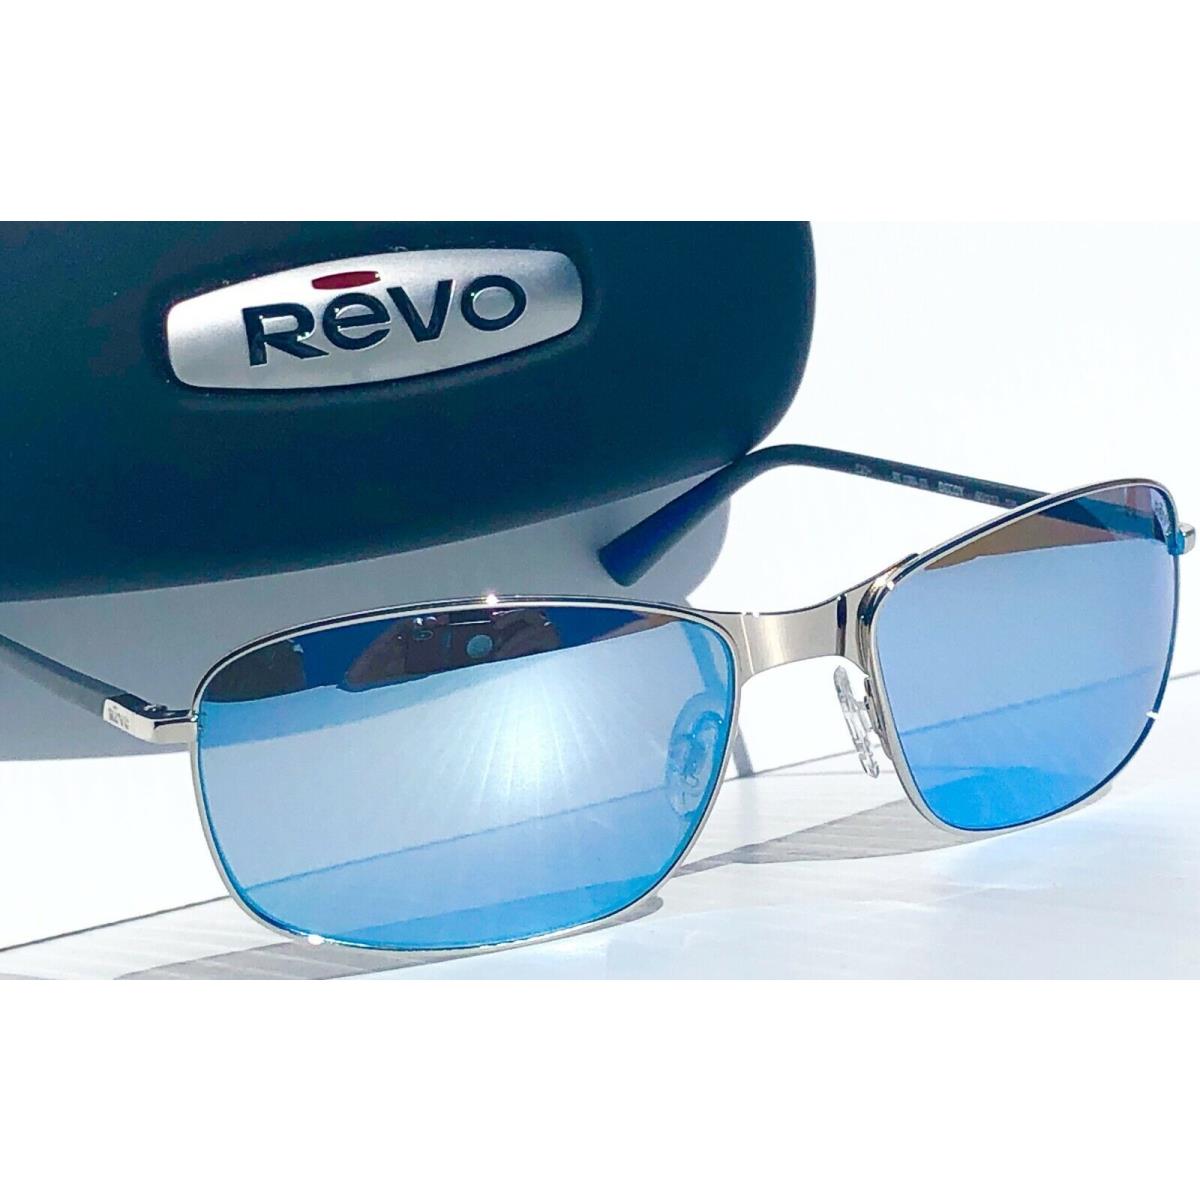 Revo Decoy Chrome w Polarized Blue Water Lens Sunglass 1084 03 BL